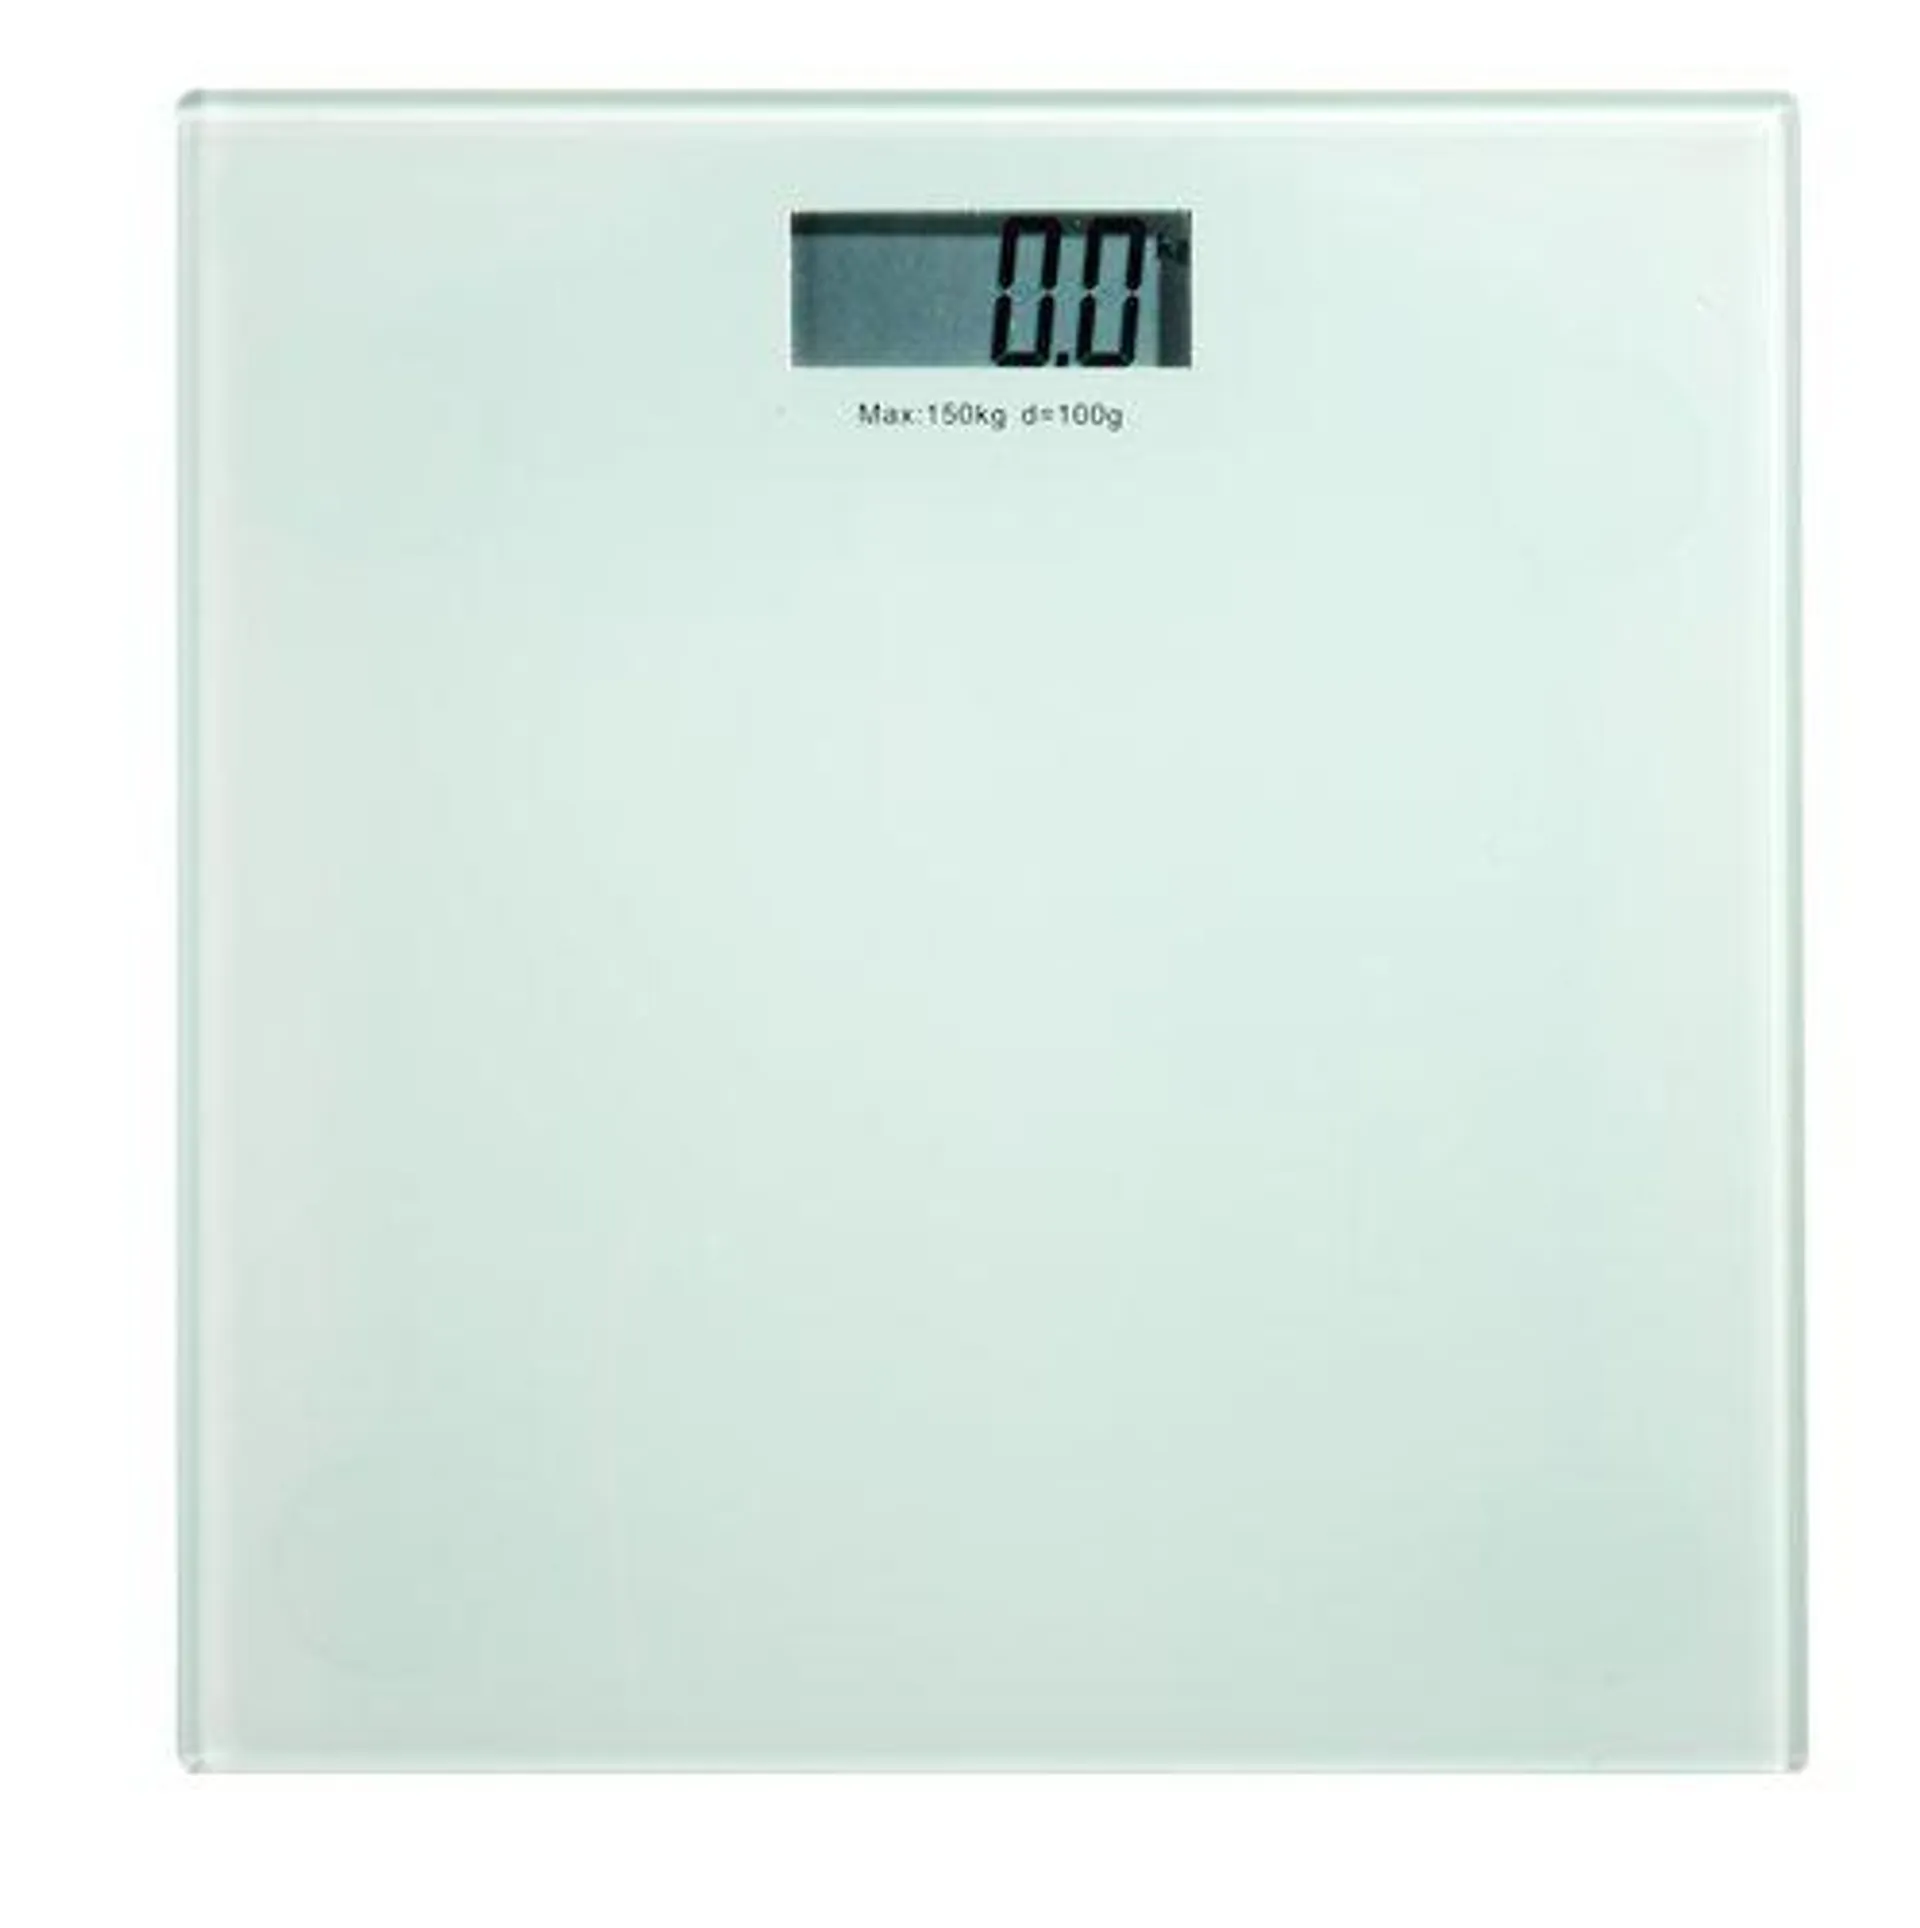 Bathroom scales KROKEK glass 150kg/100g